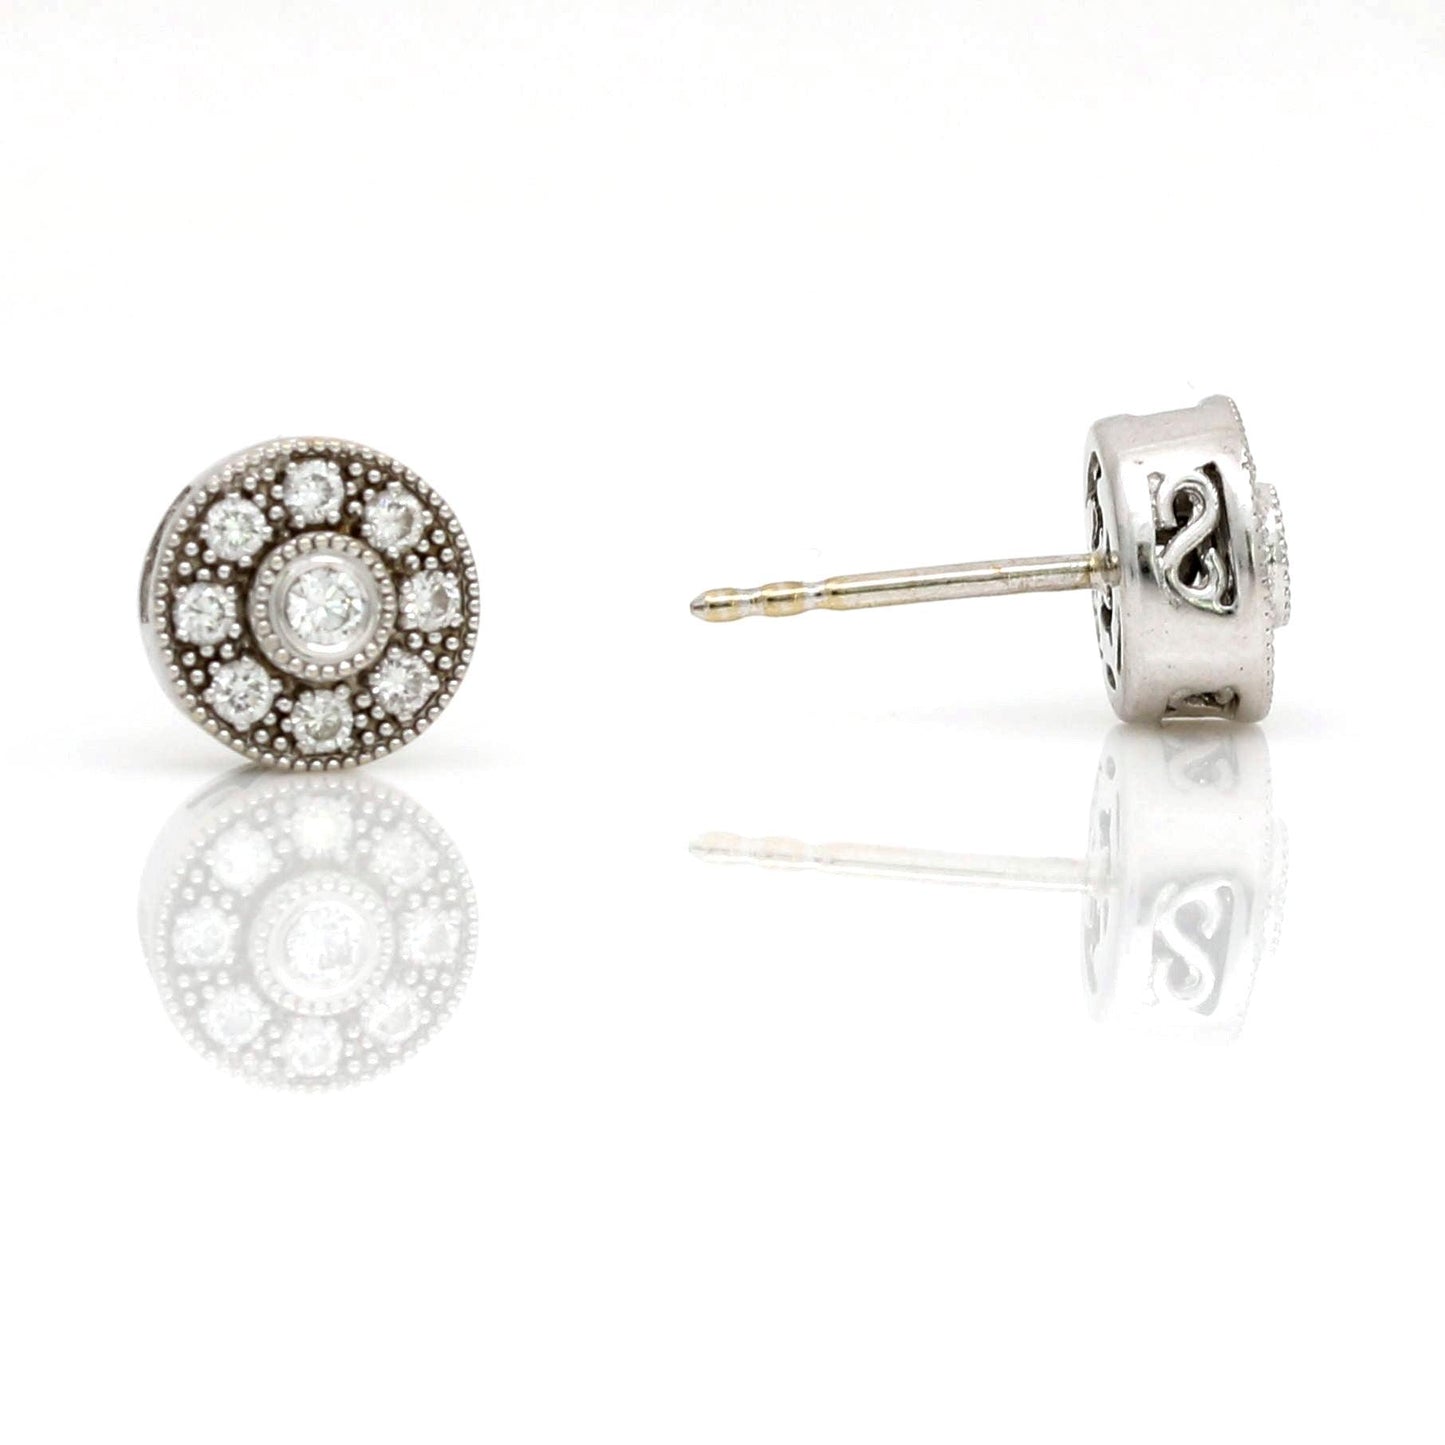 Women's Milgrain Diamond Stud Earrings in 18k White Gold - 31 Jewels Inc.